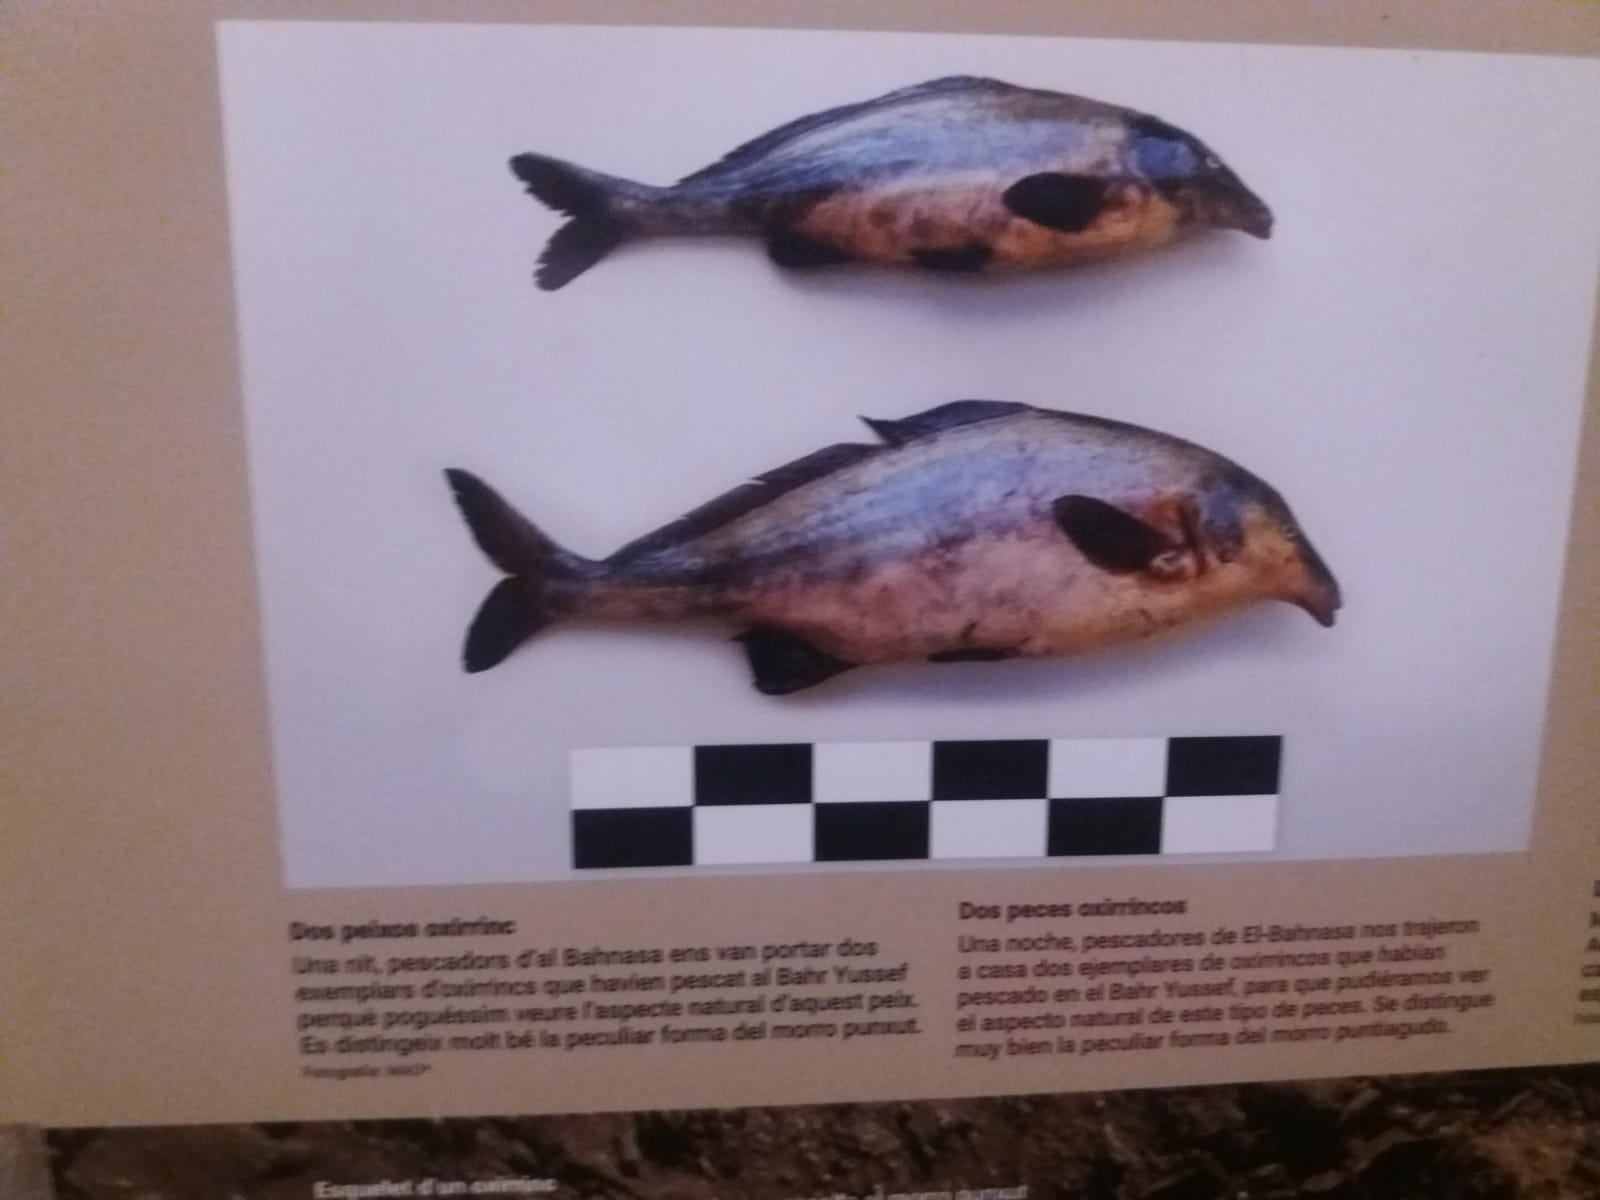 Foto de peces oxirrinco, en la exposición en la UB.